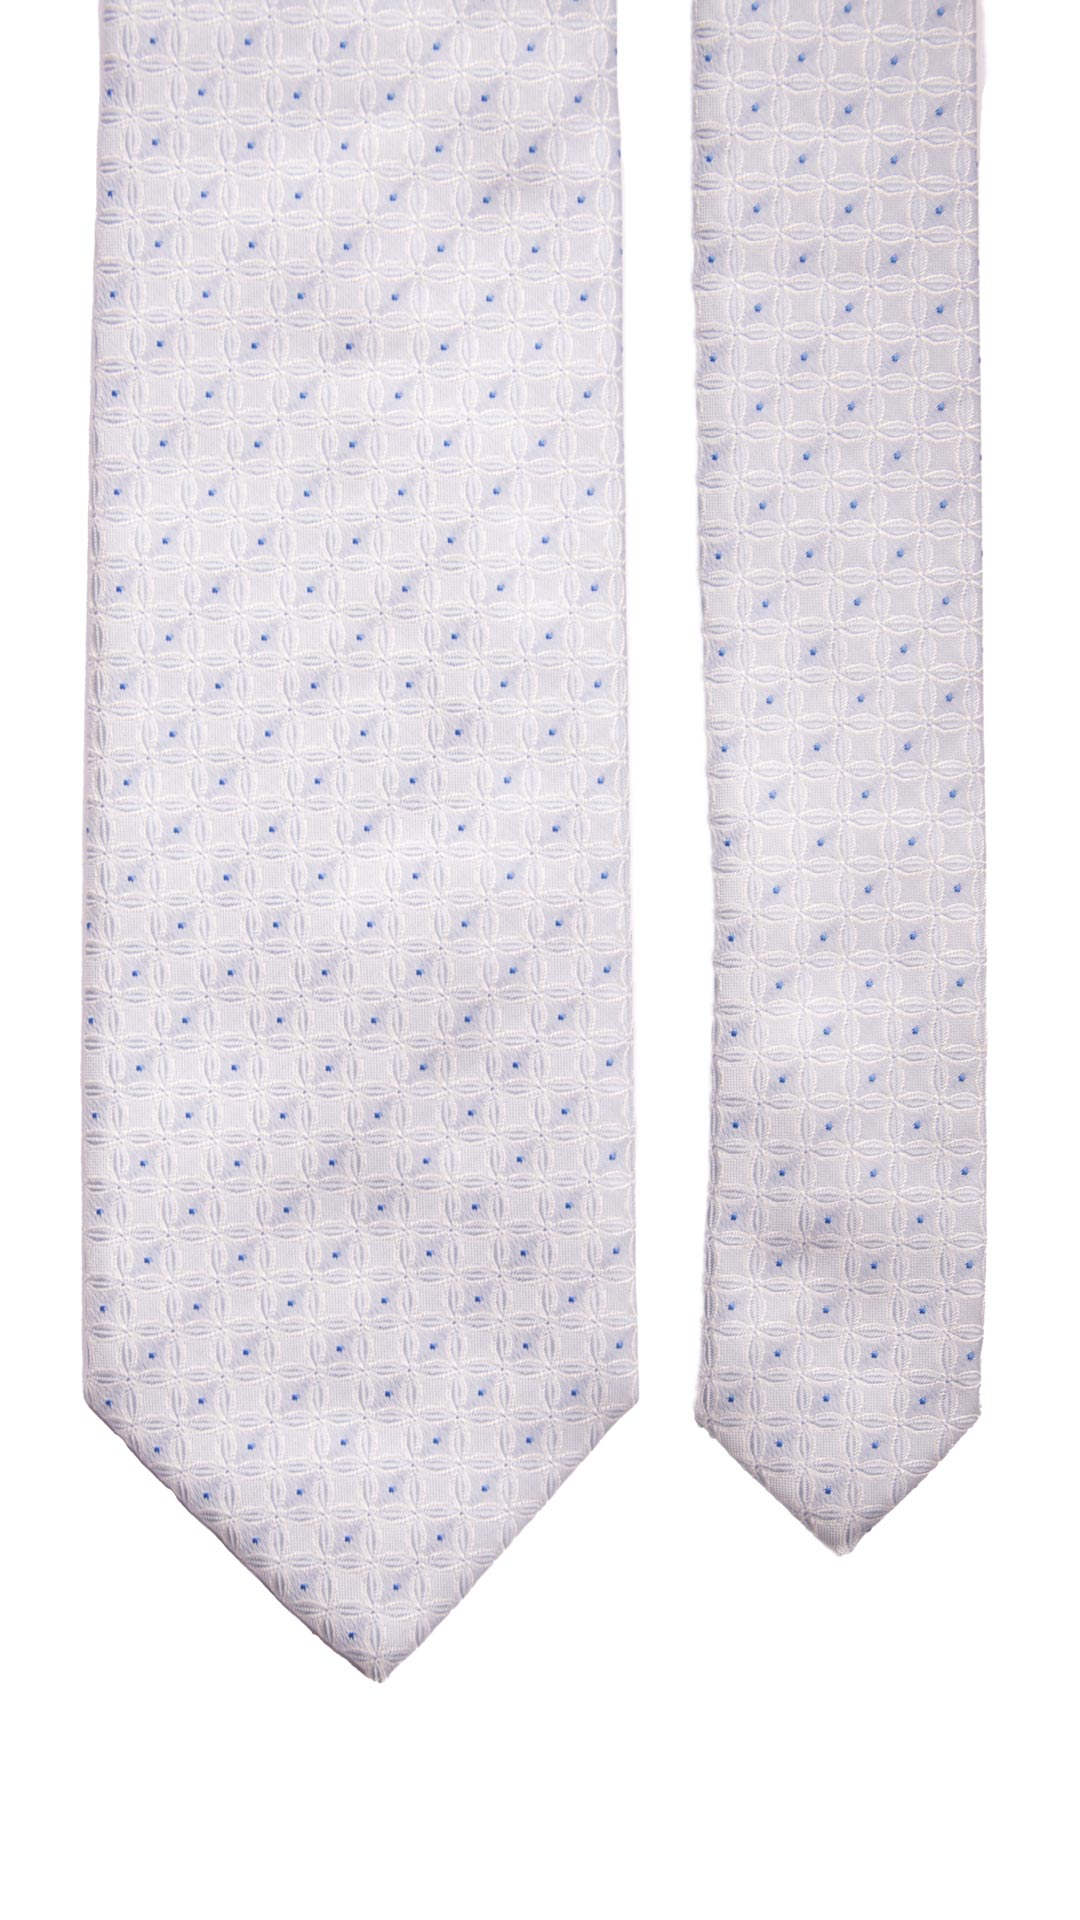 Cravatta da Cerimonia di Seta Color Ghiaccio Fantasia Bianca Bluette Made in Italy Graffeo Cravatte Pala